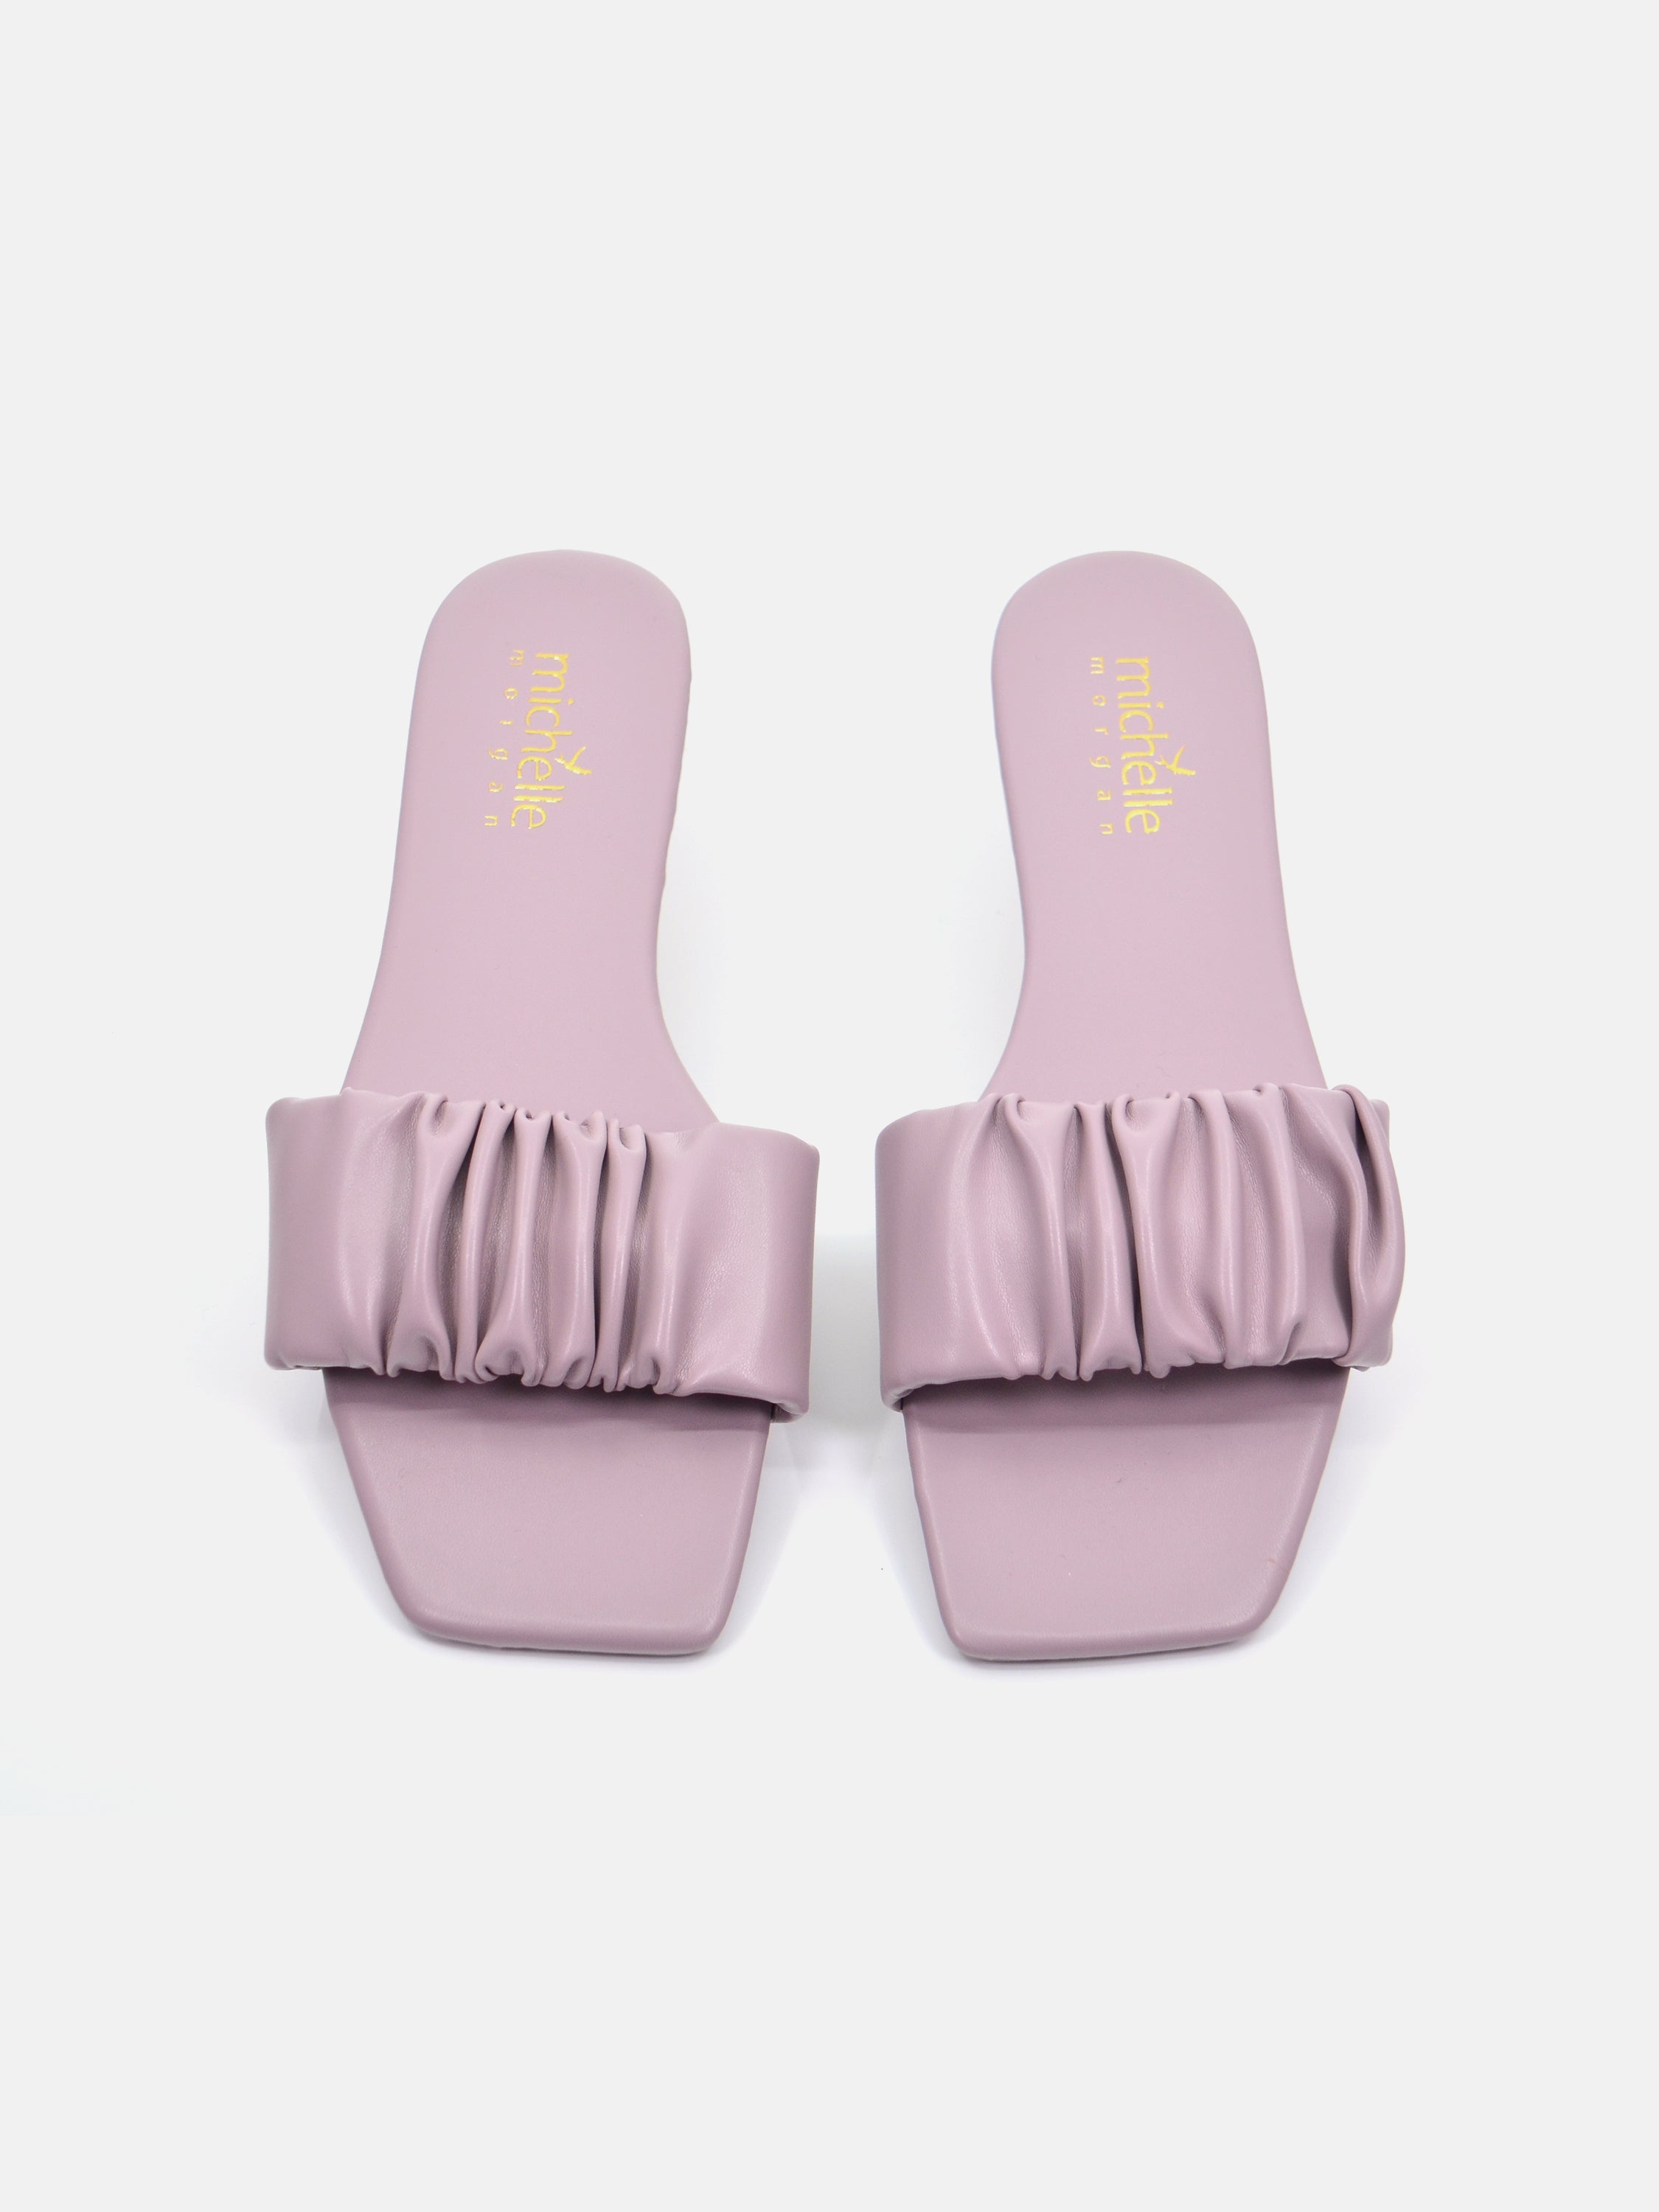 Michelle Morgan 114RJ807 Women's Flat Sandals #color_Purple